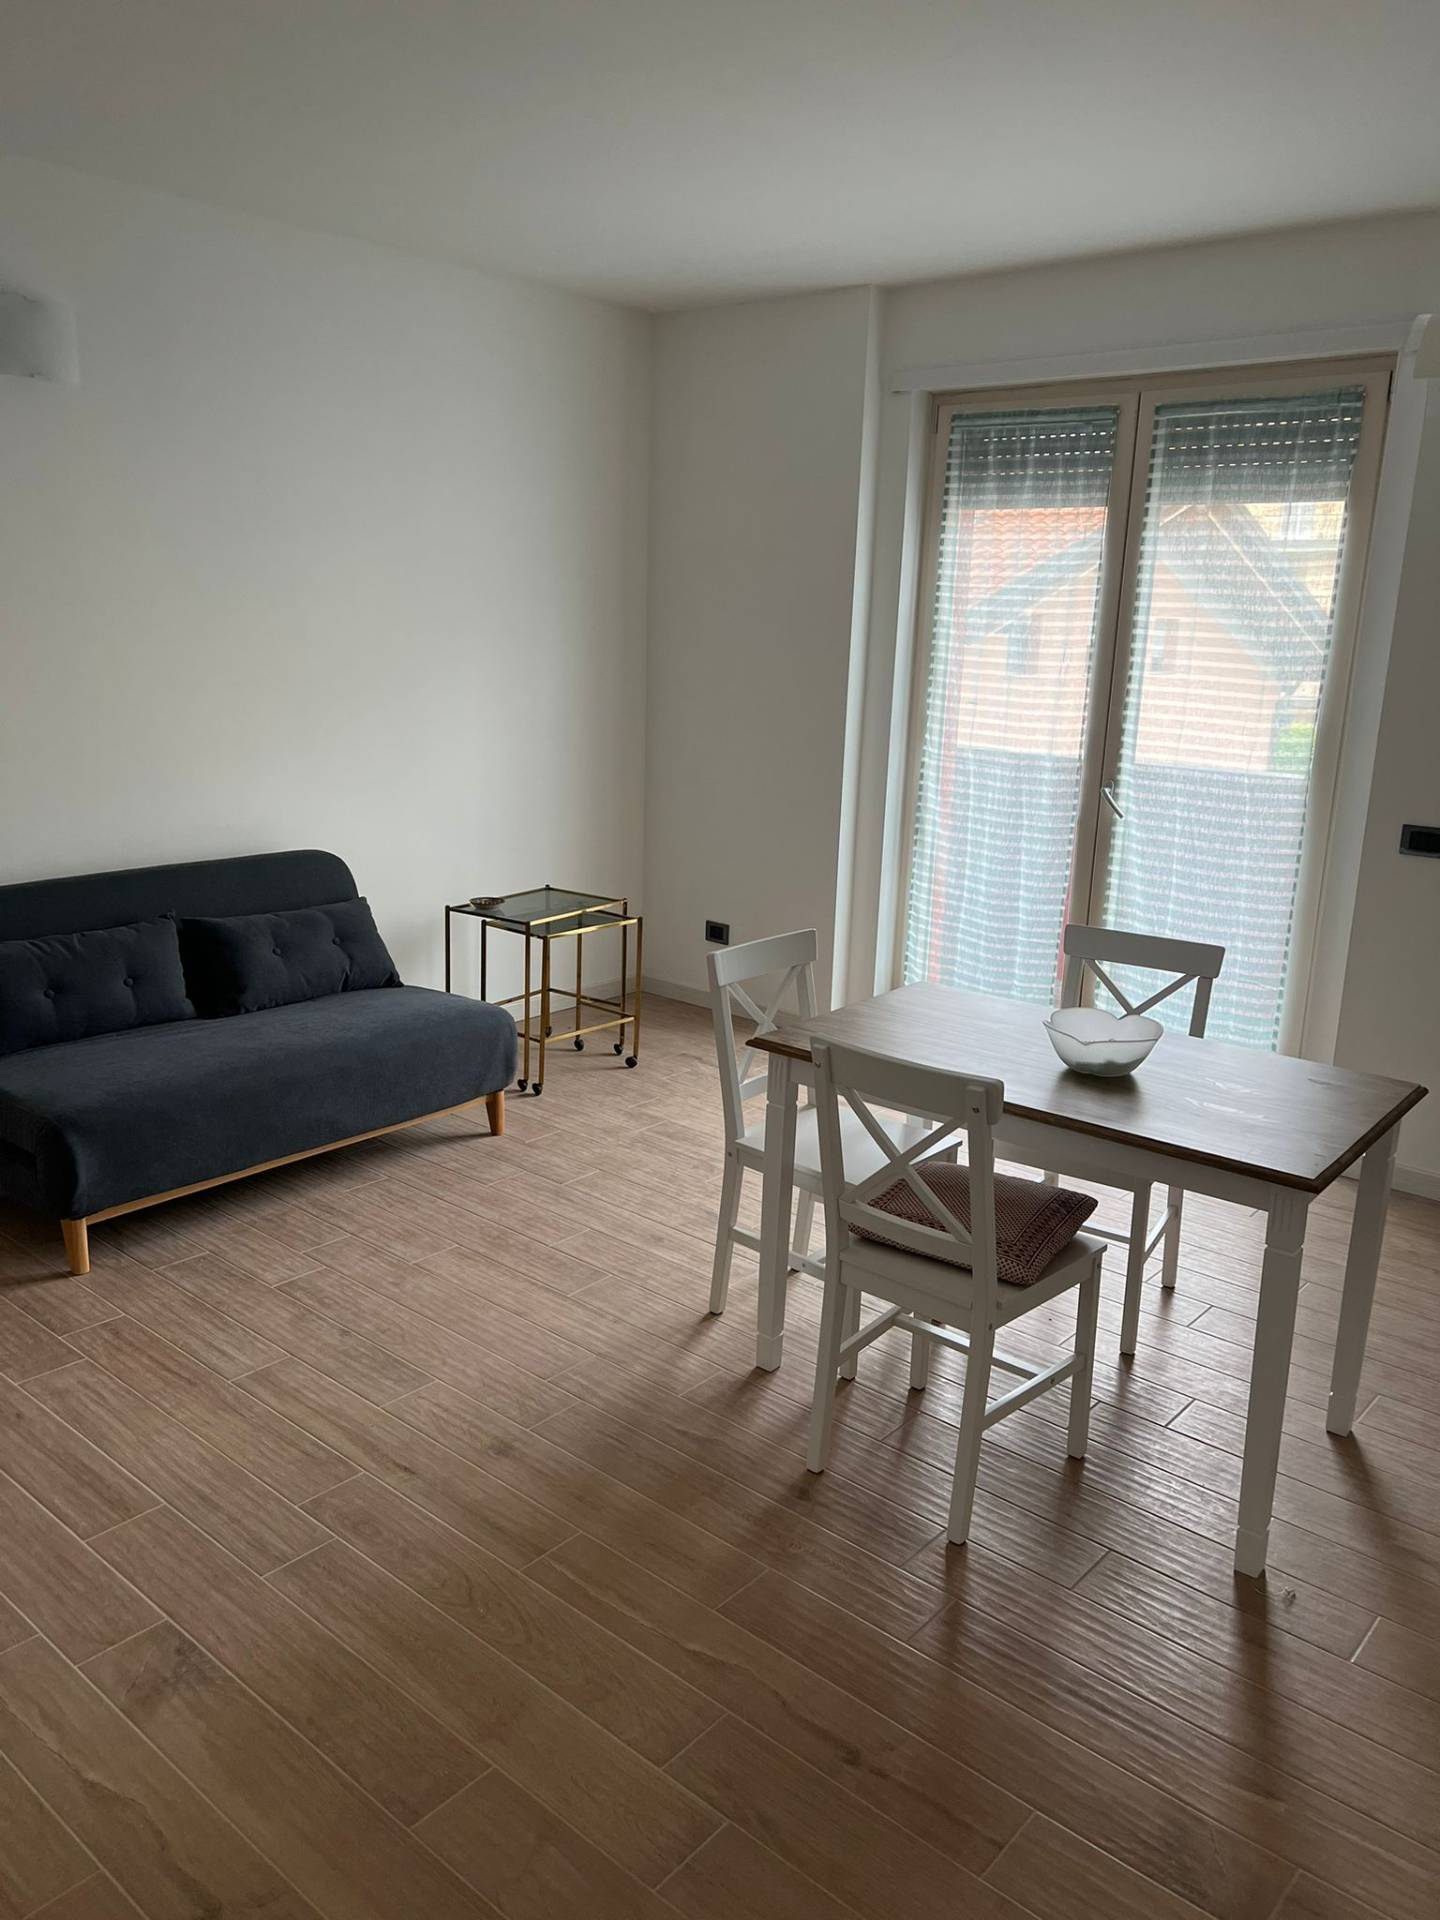 Appartamento in affitto a Novara, 2 locali, zona Località: S.Cuore-S.Martino, prezzo € 640 | CambioCasa.it